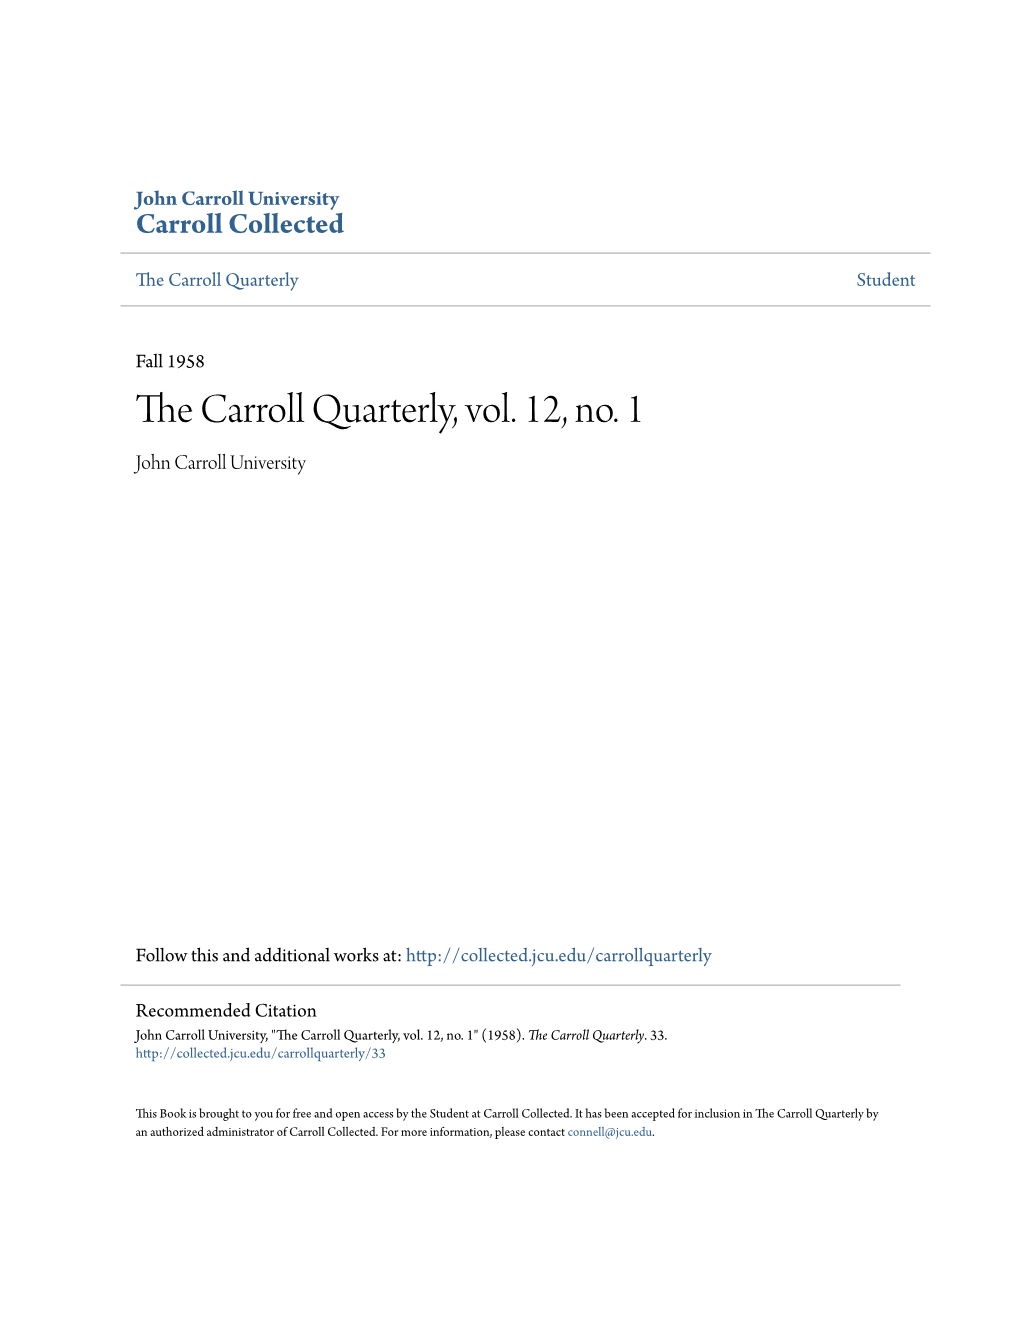 The Carroll Quarterly, Vol. 12, No. 1